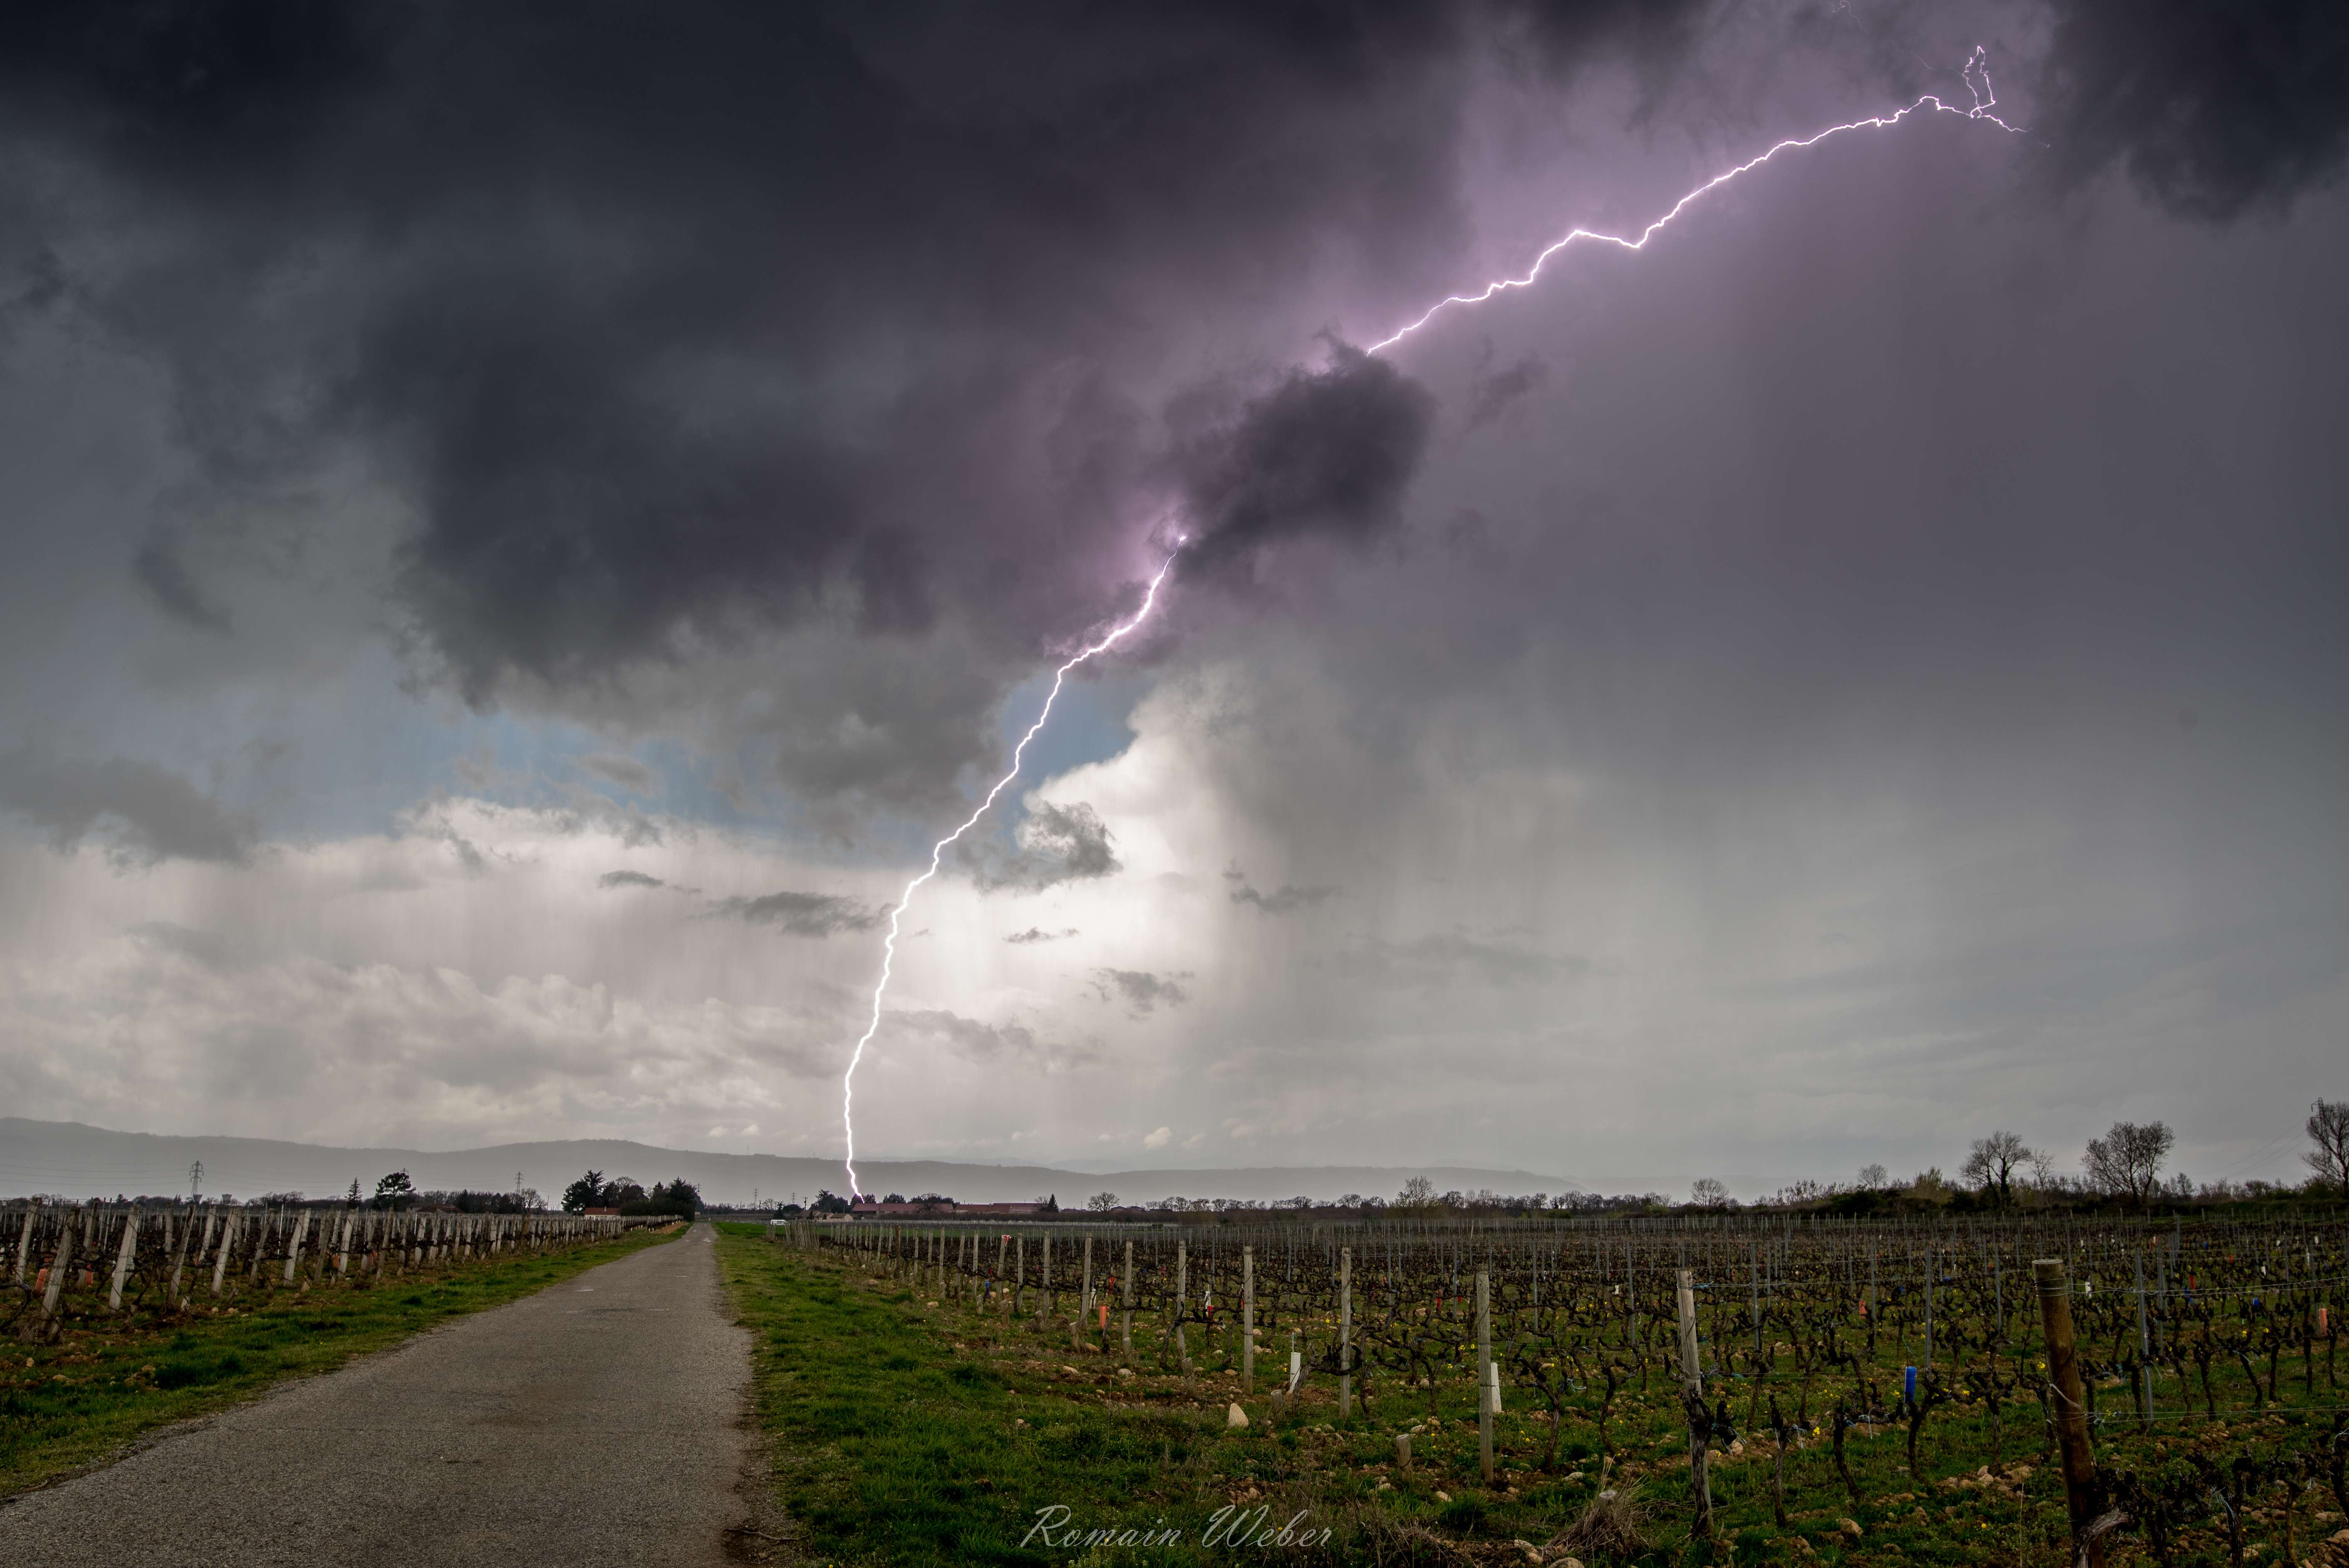 En ce mercredi 04 avril, des orages éclatent en vallée du Rhône. Les impacts de foudre sont puissants et tombent régulièrement entre Tournon-sur-Rhône et Valence. - 04/04/2018 14:03 - Romain Weber